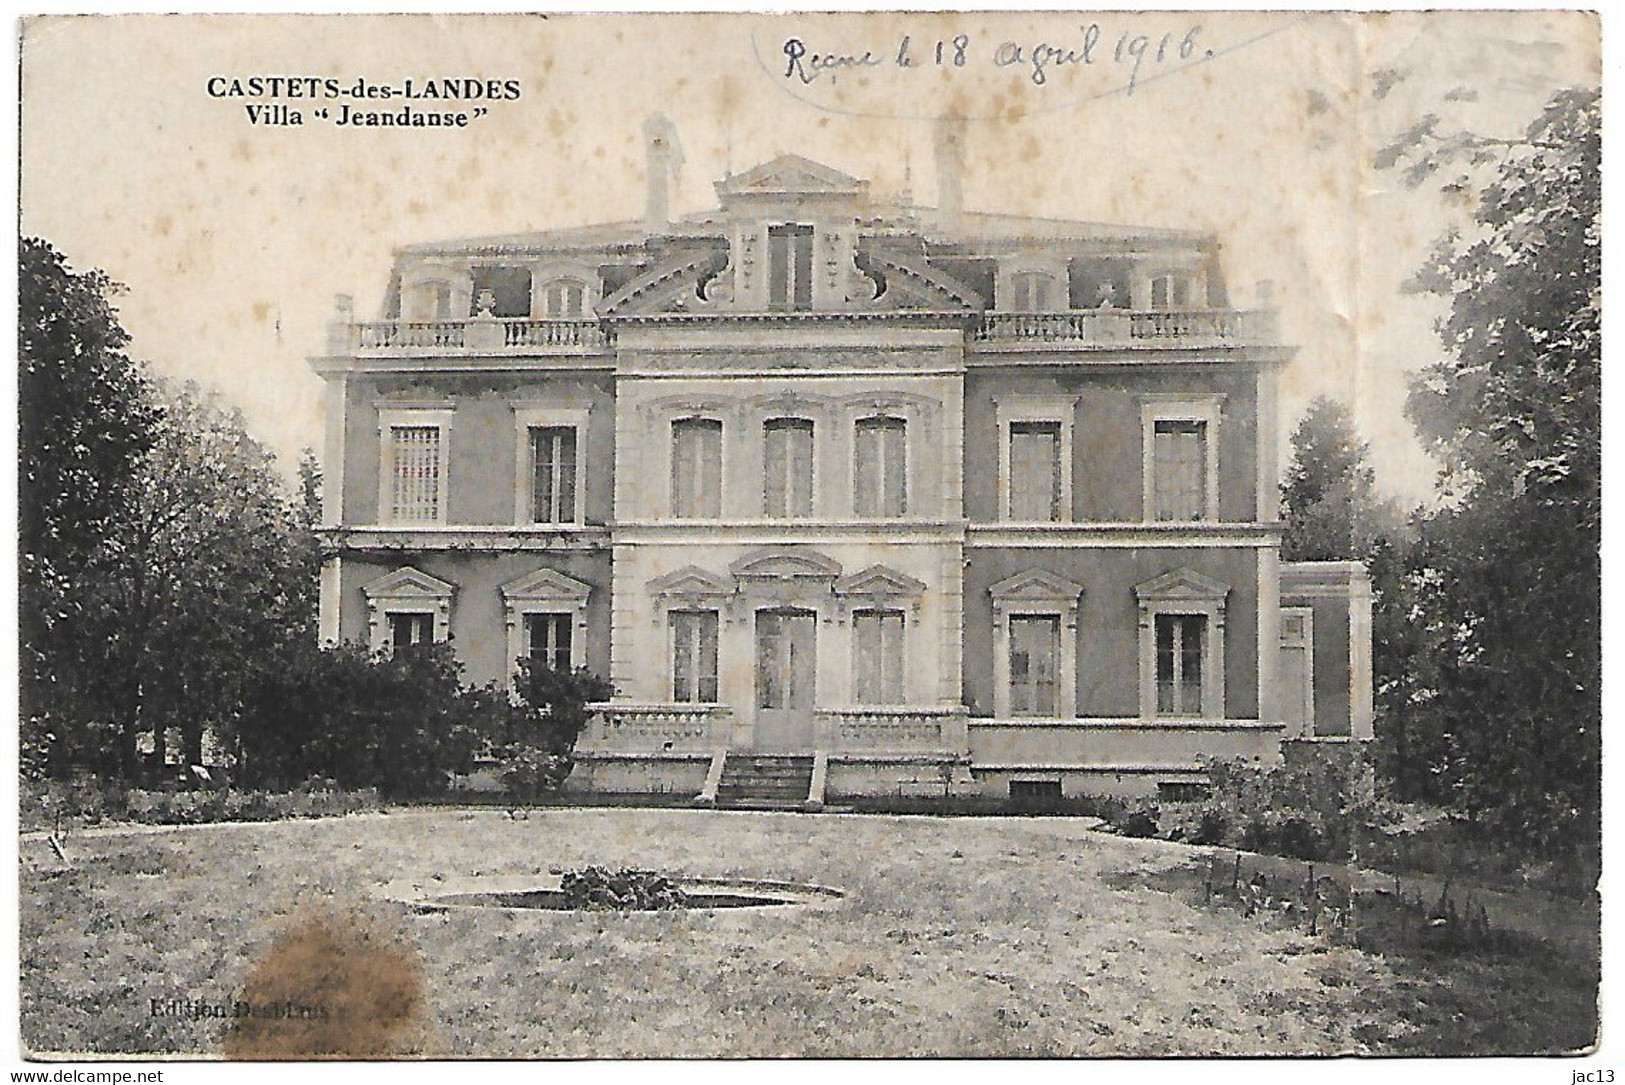 L100H555 - Castets-des-Landes - Villa "Jeandanse" - Castets